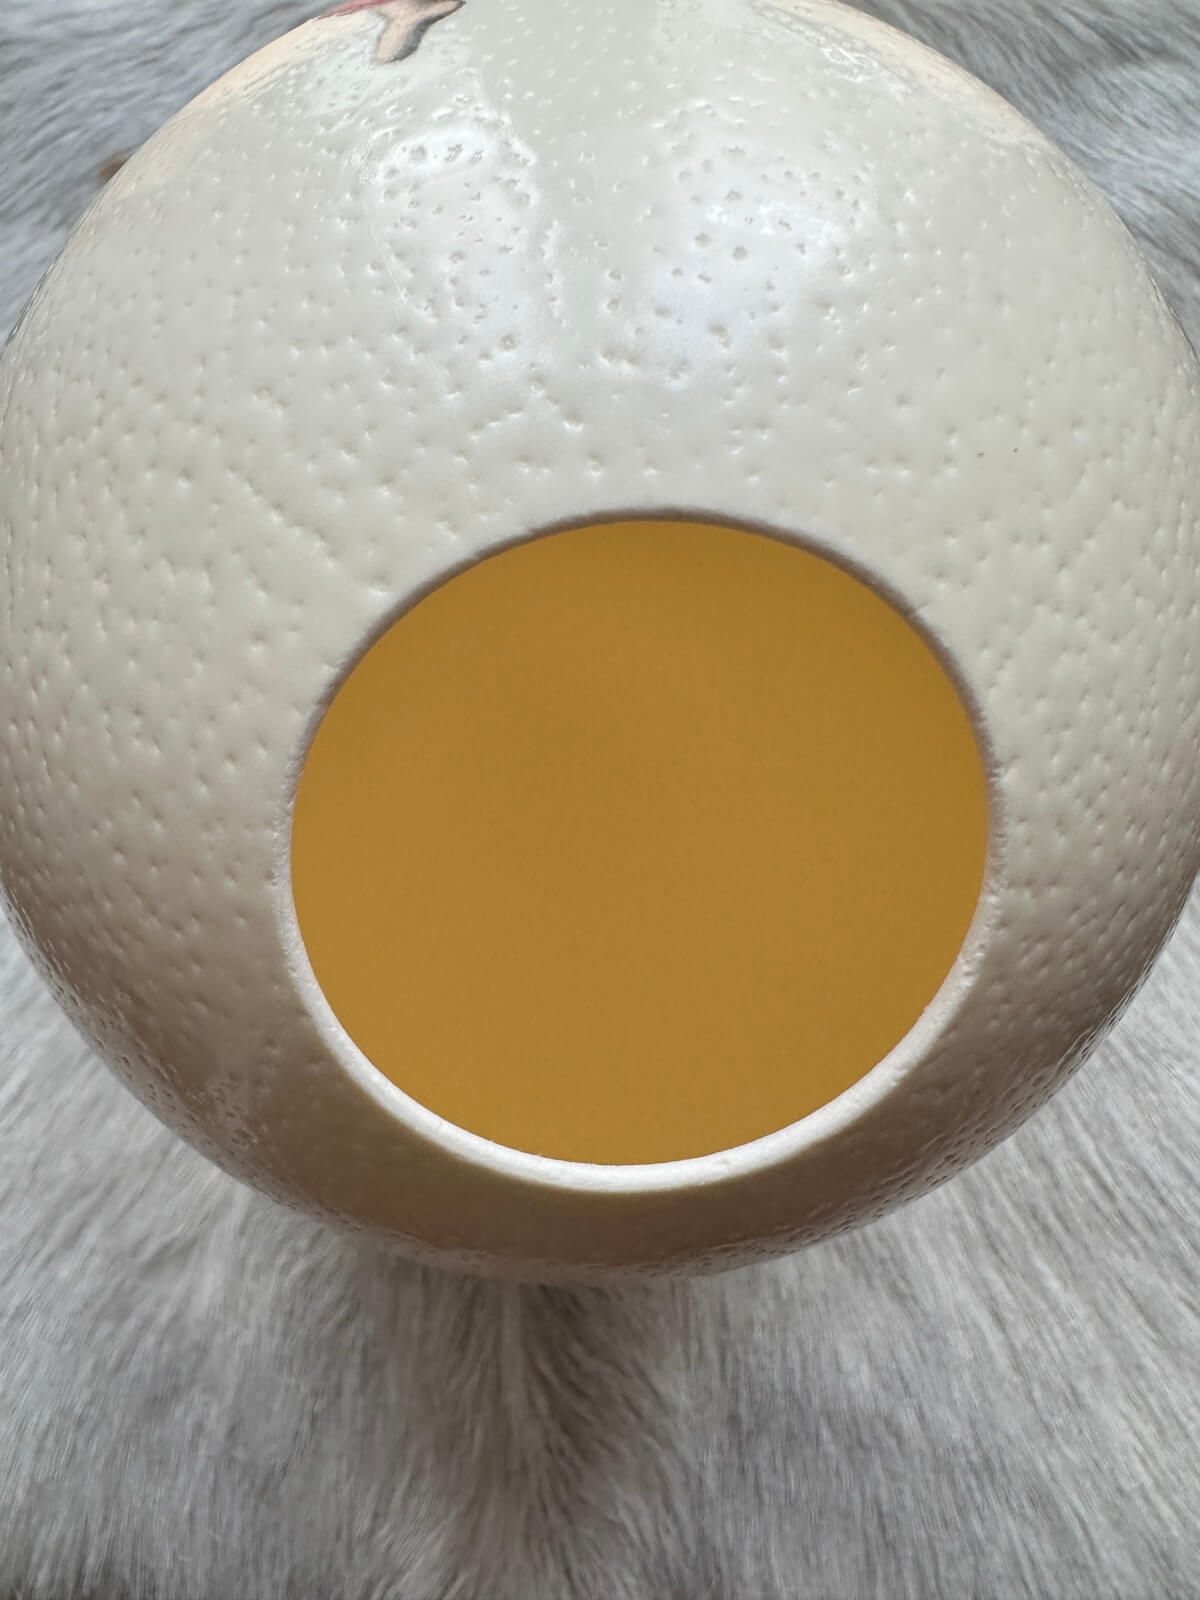 Straußeneilampe "Engel", echtes Ei mit strahlendem Wohlfühllicht